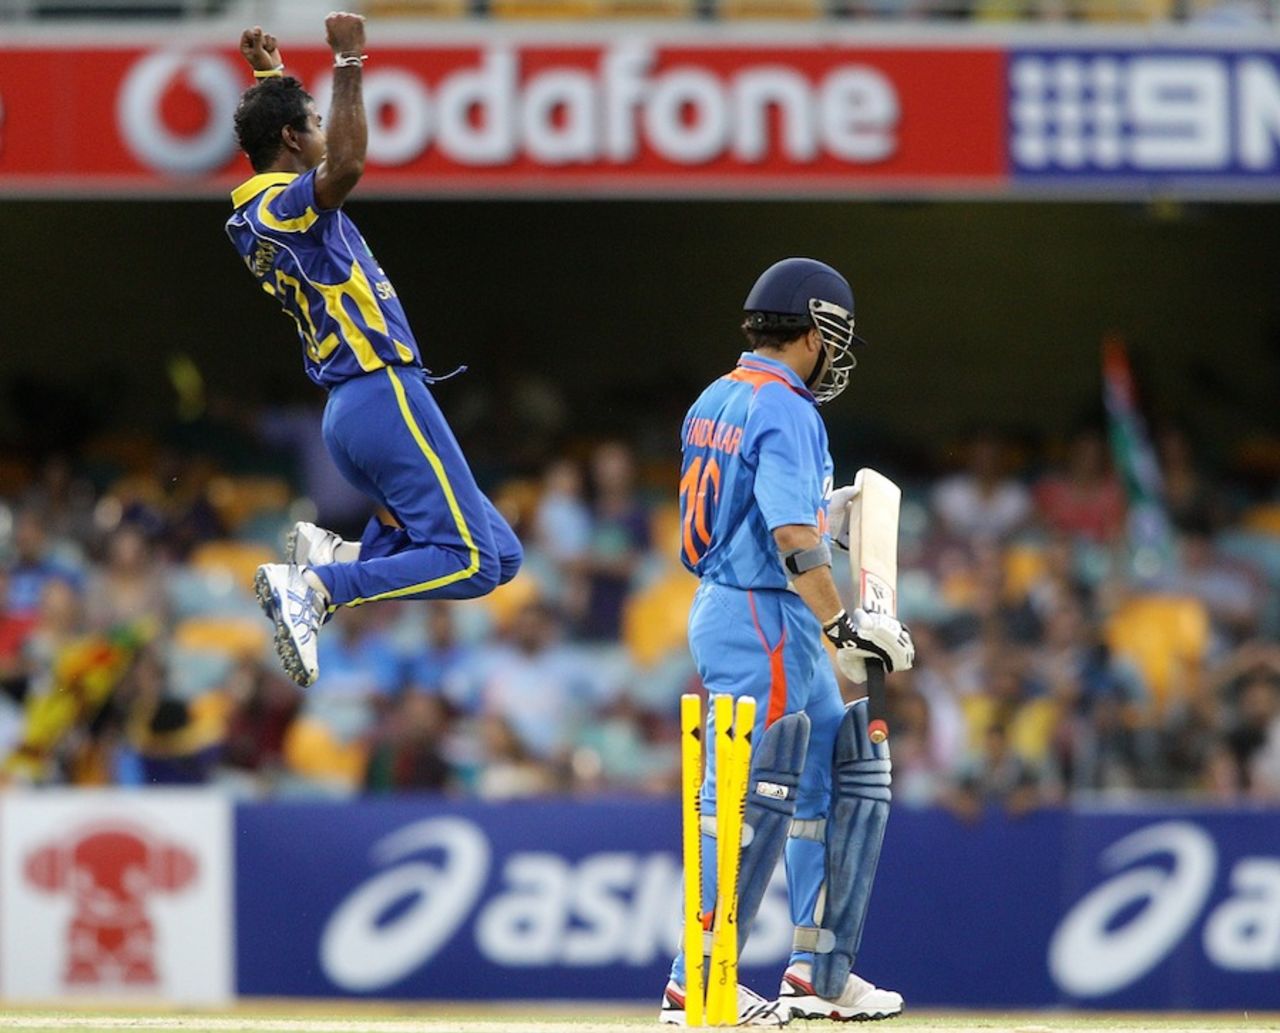 Nuwan Kulasekara celebrates Sachin Tendulkar's wicket, India v Sri Lanka, CB Series, Brisbane, February 21, 2012